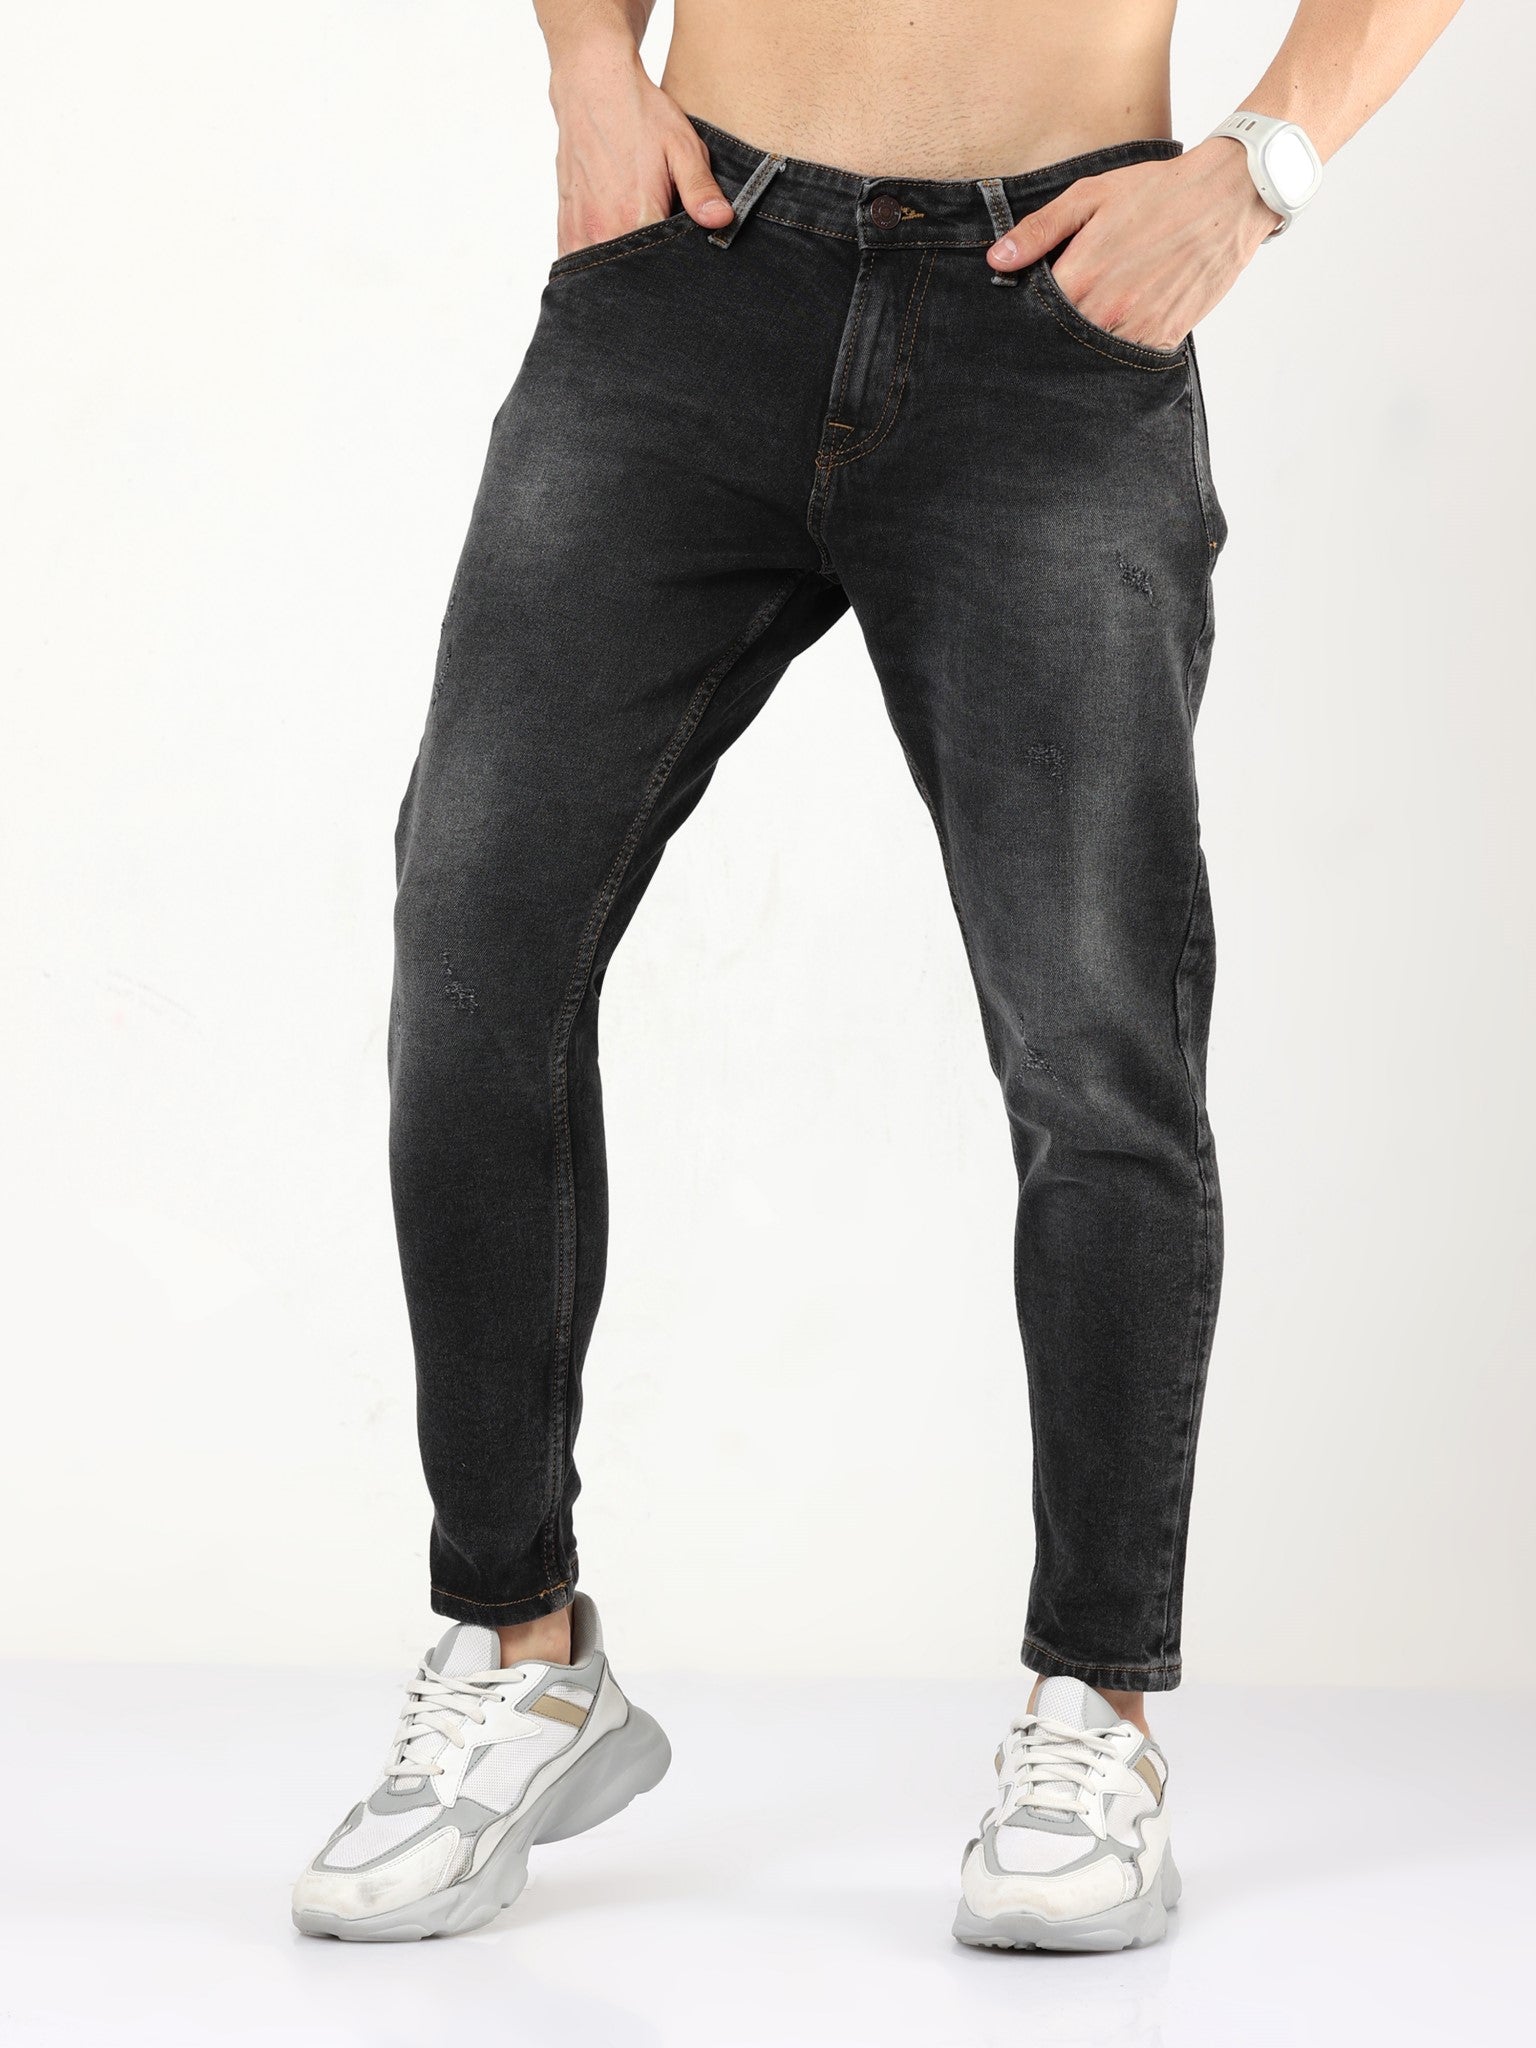 Toucan Black Skinny Jeans for Men